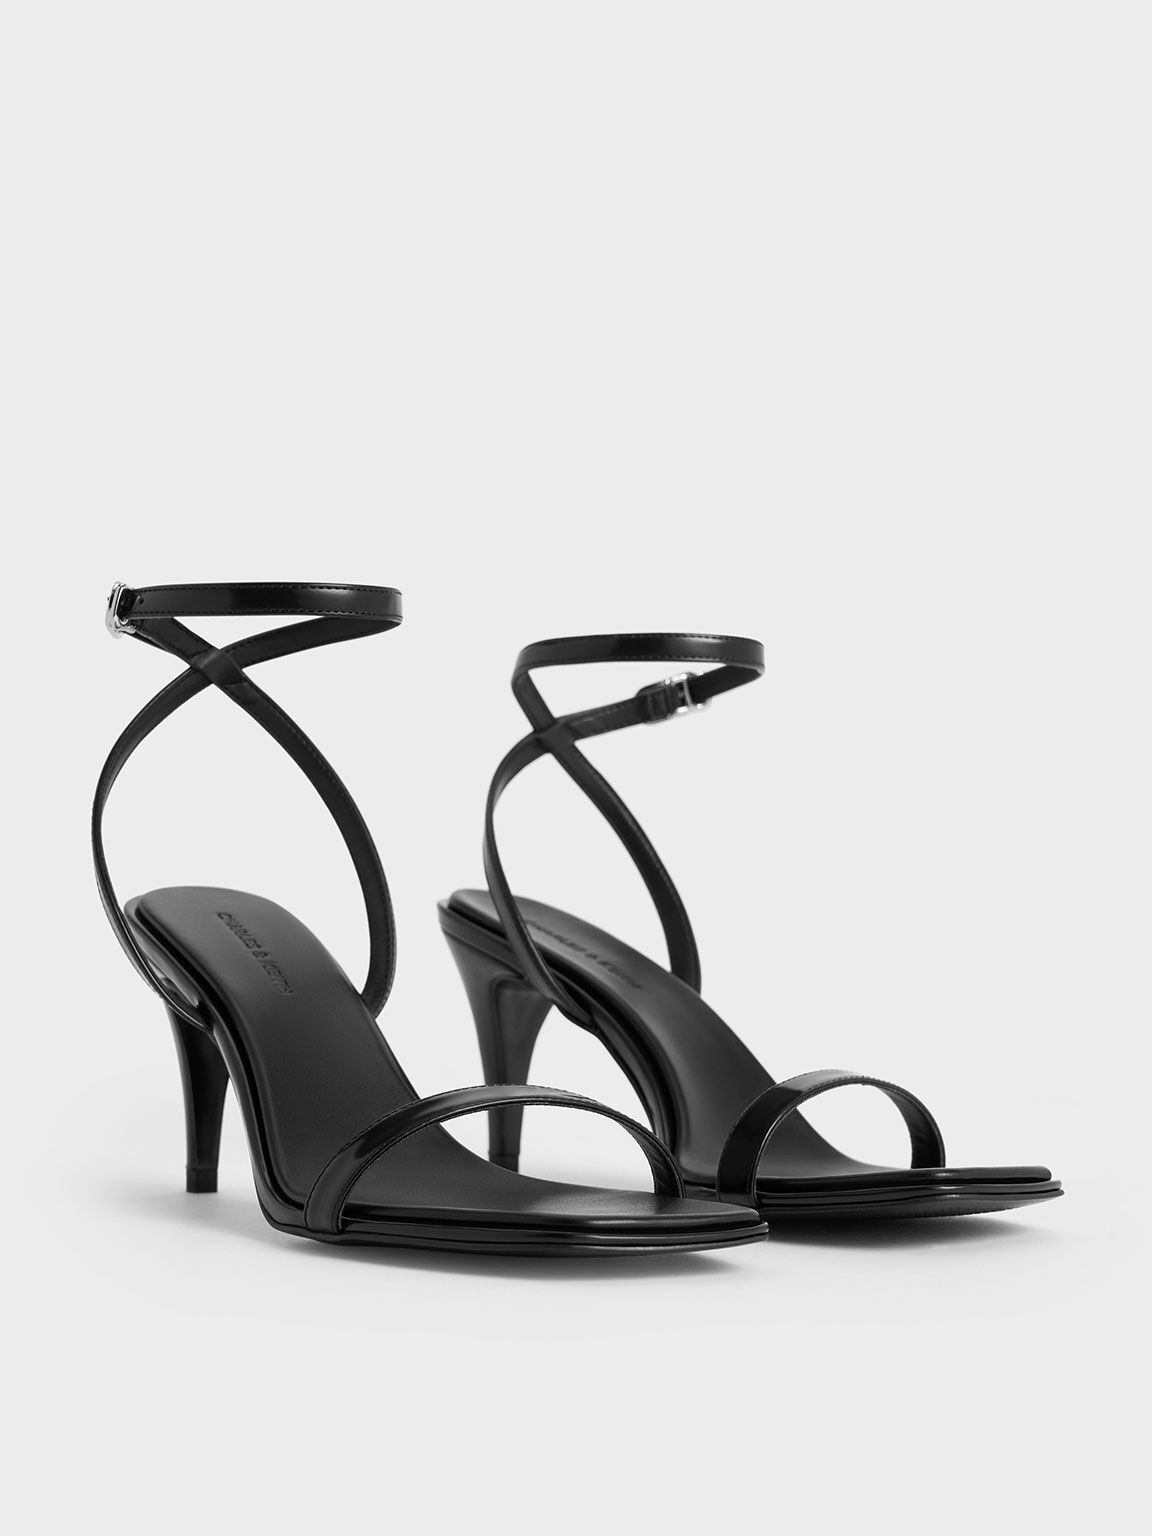 Ankle-Strap Heeled Sandals, Black Box, hi-res